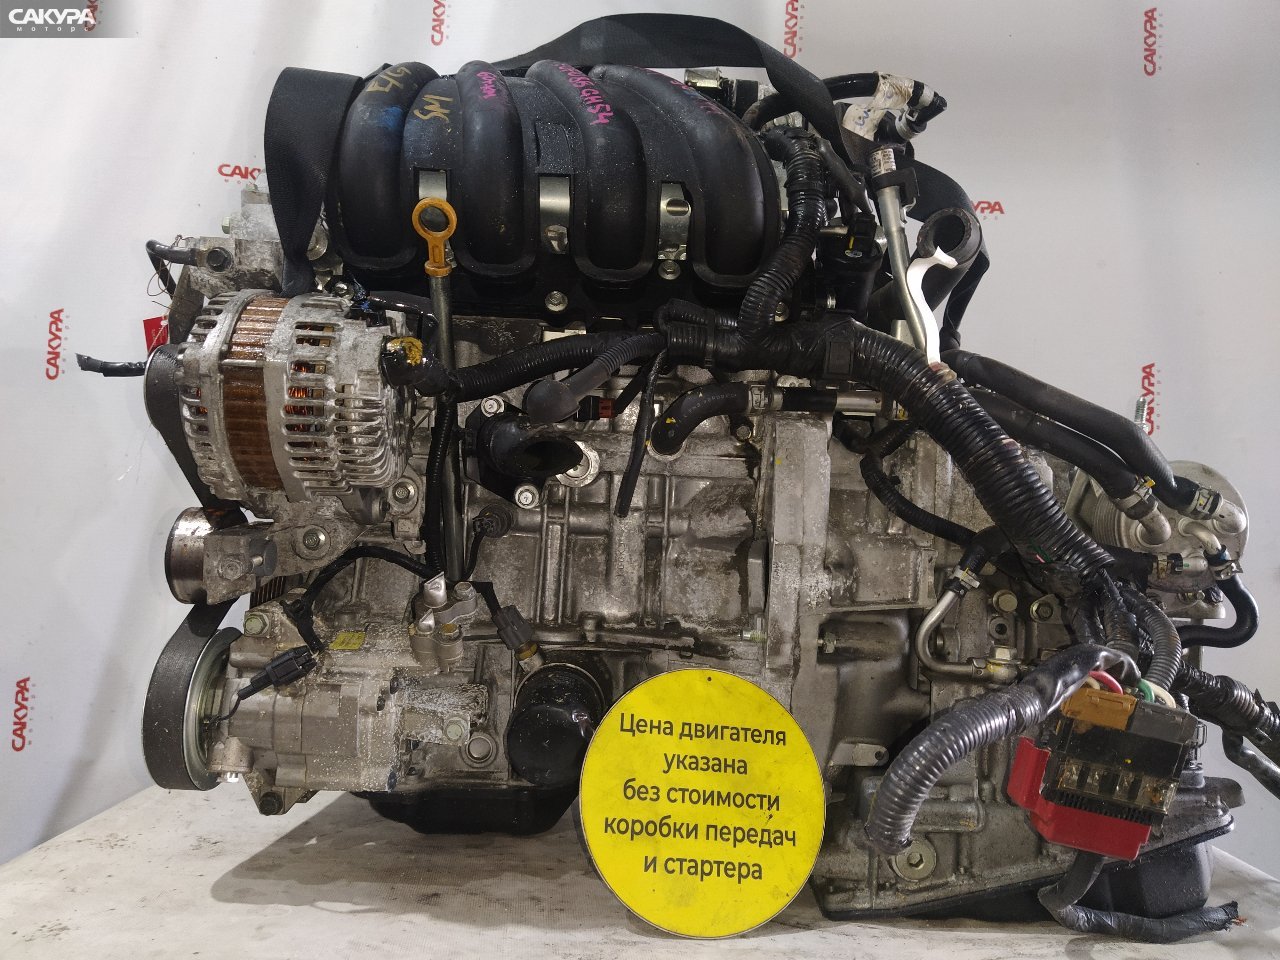 Двигатель Nissan Note E11 HR15DE: купить в Сакура Красноярск.